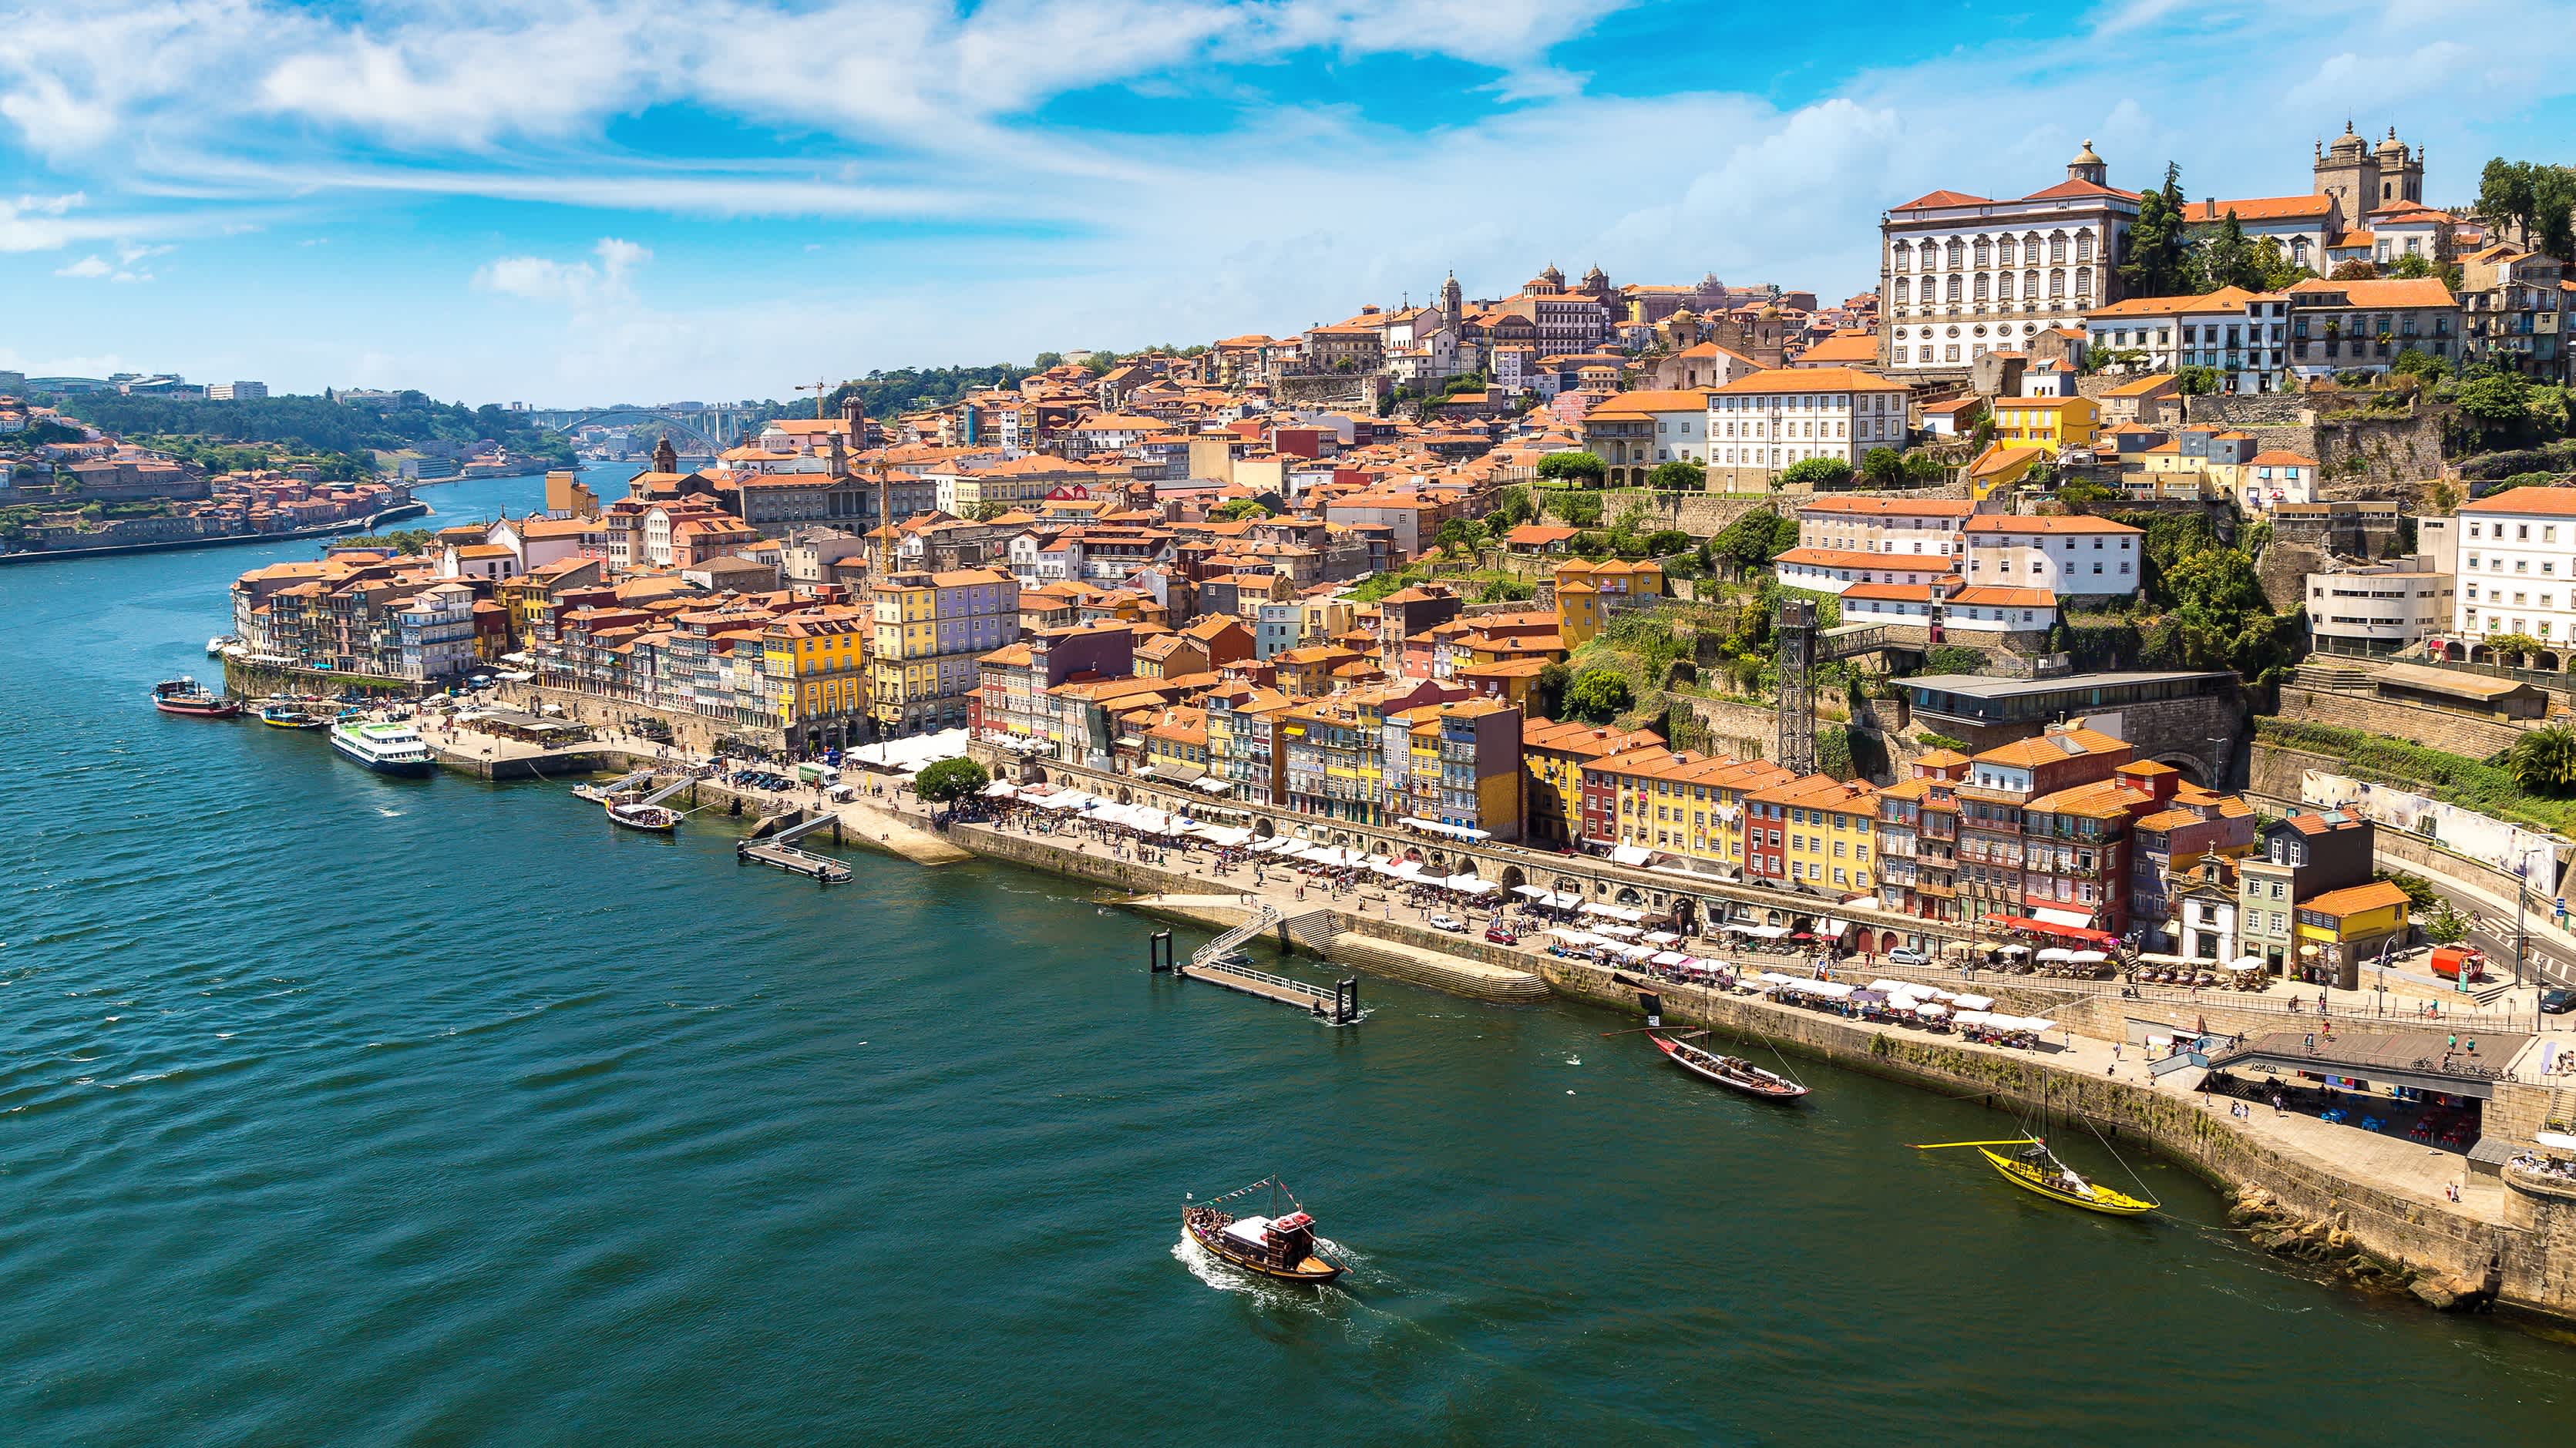 Panorama-Luftaufnahme von Porto an einem schönen Sommertag, Portugal

